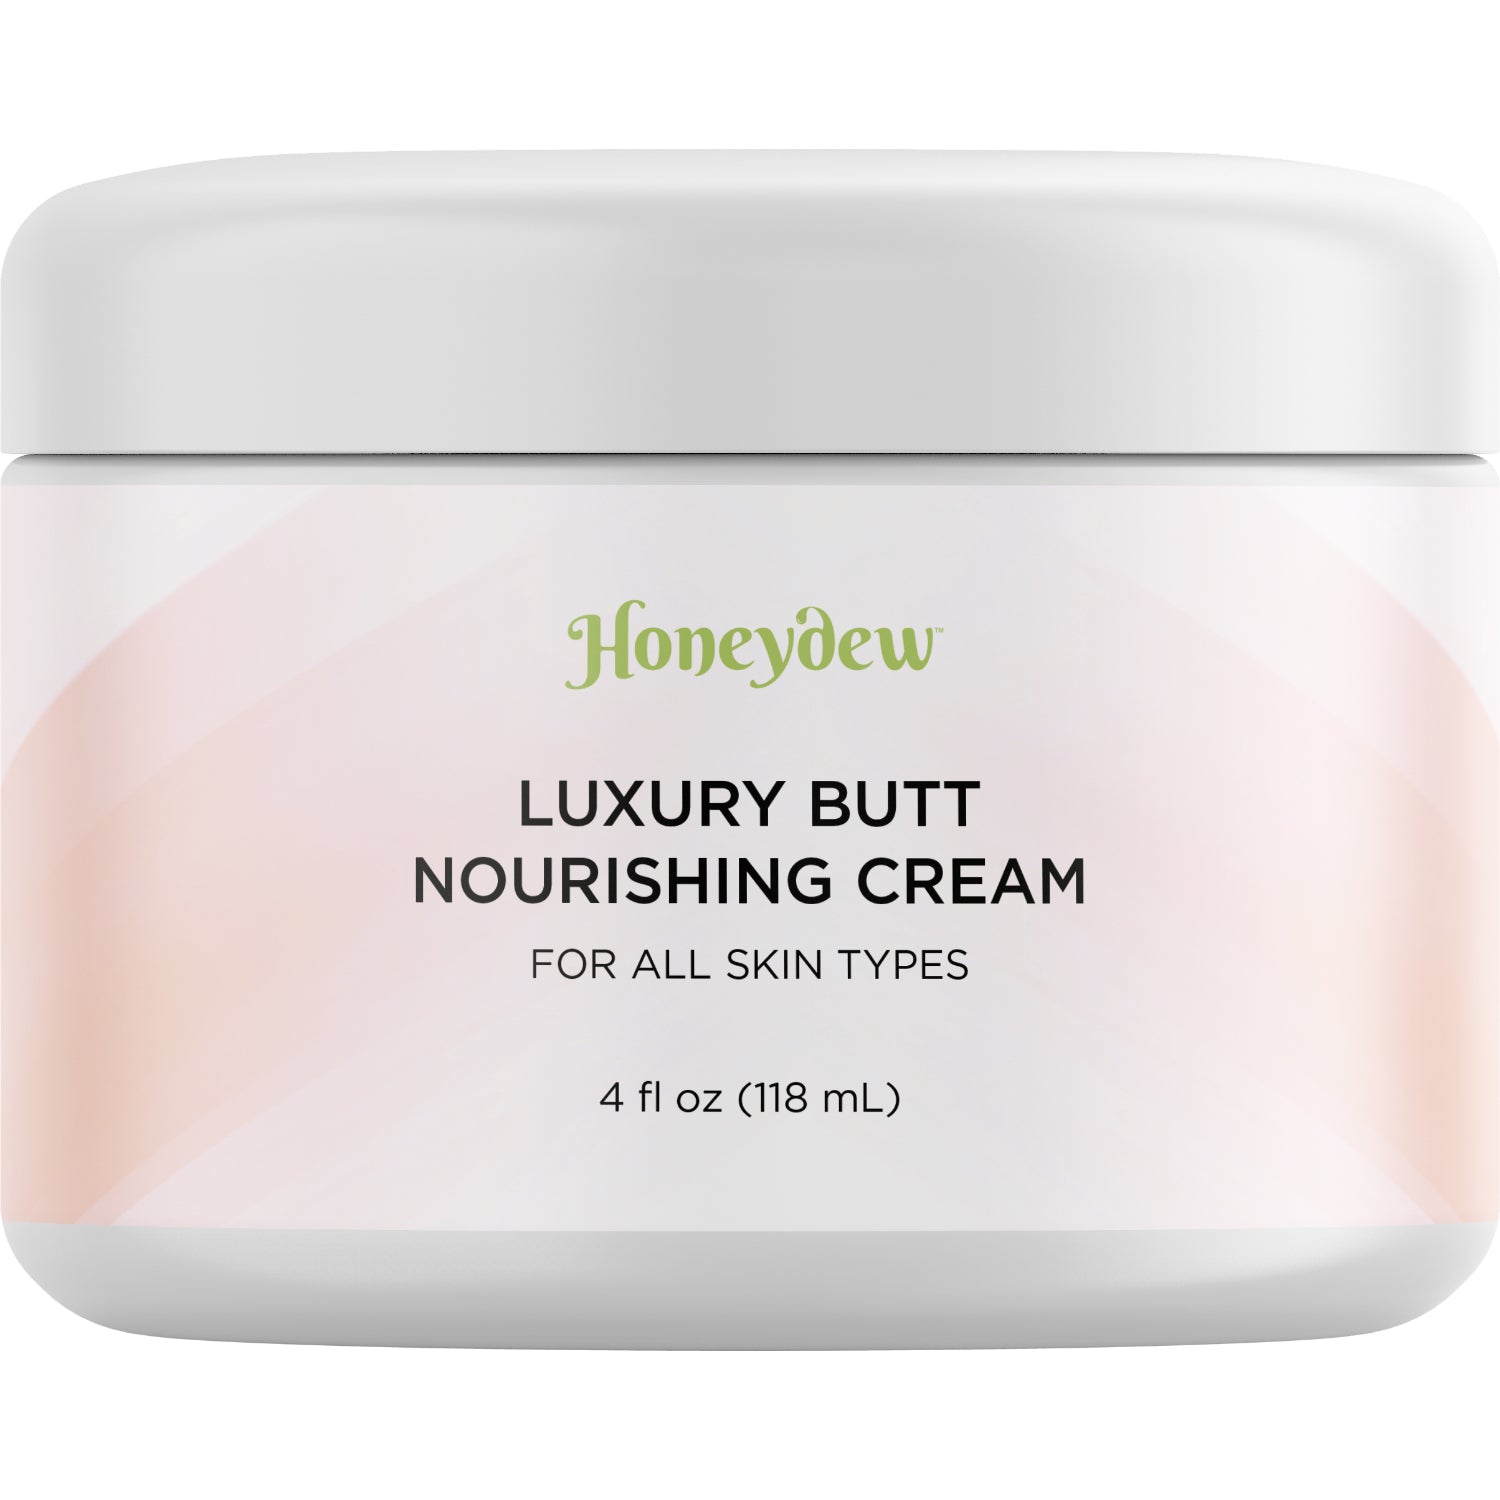 Honeydew Luxury Butt Nourishing Cream